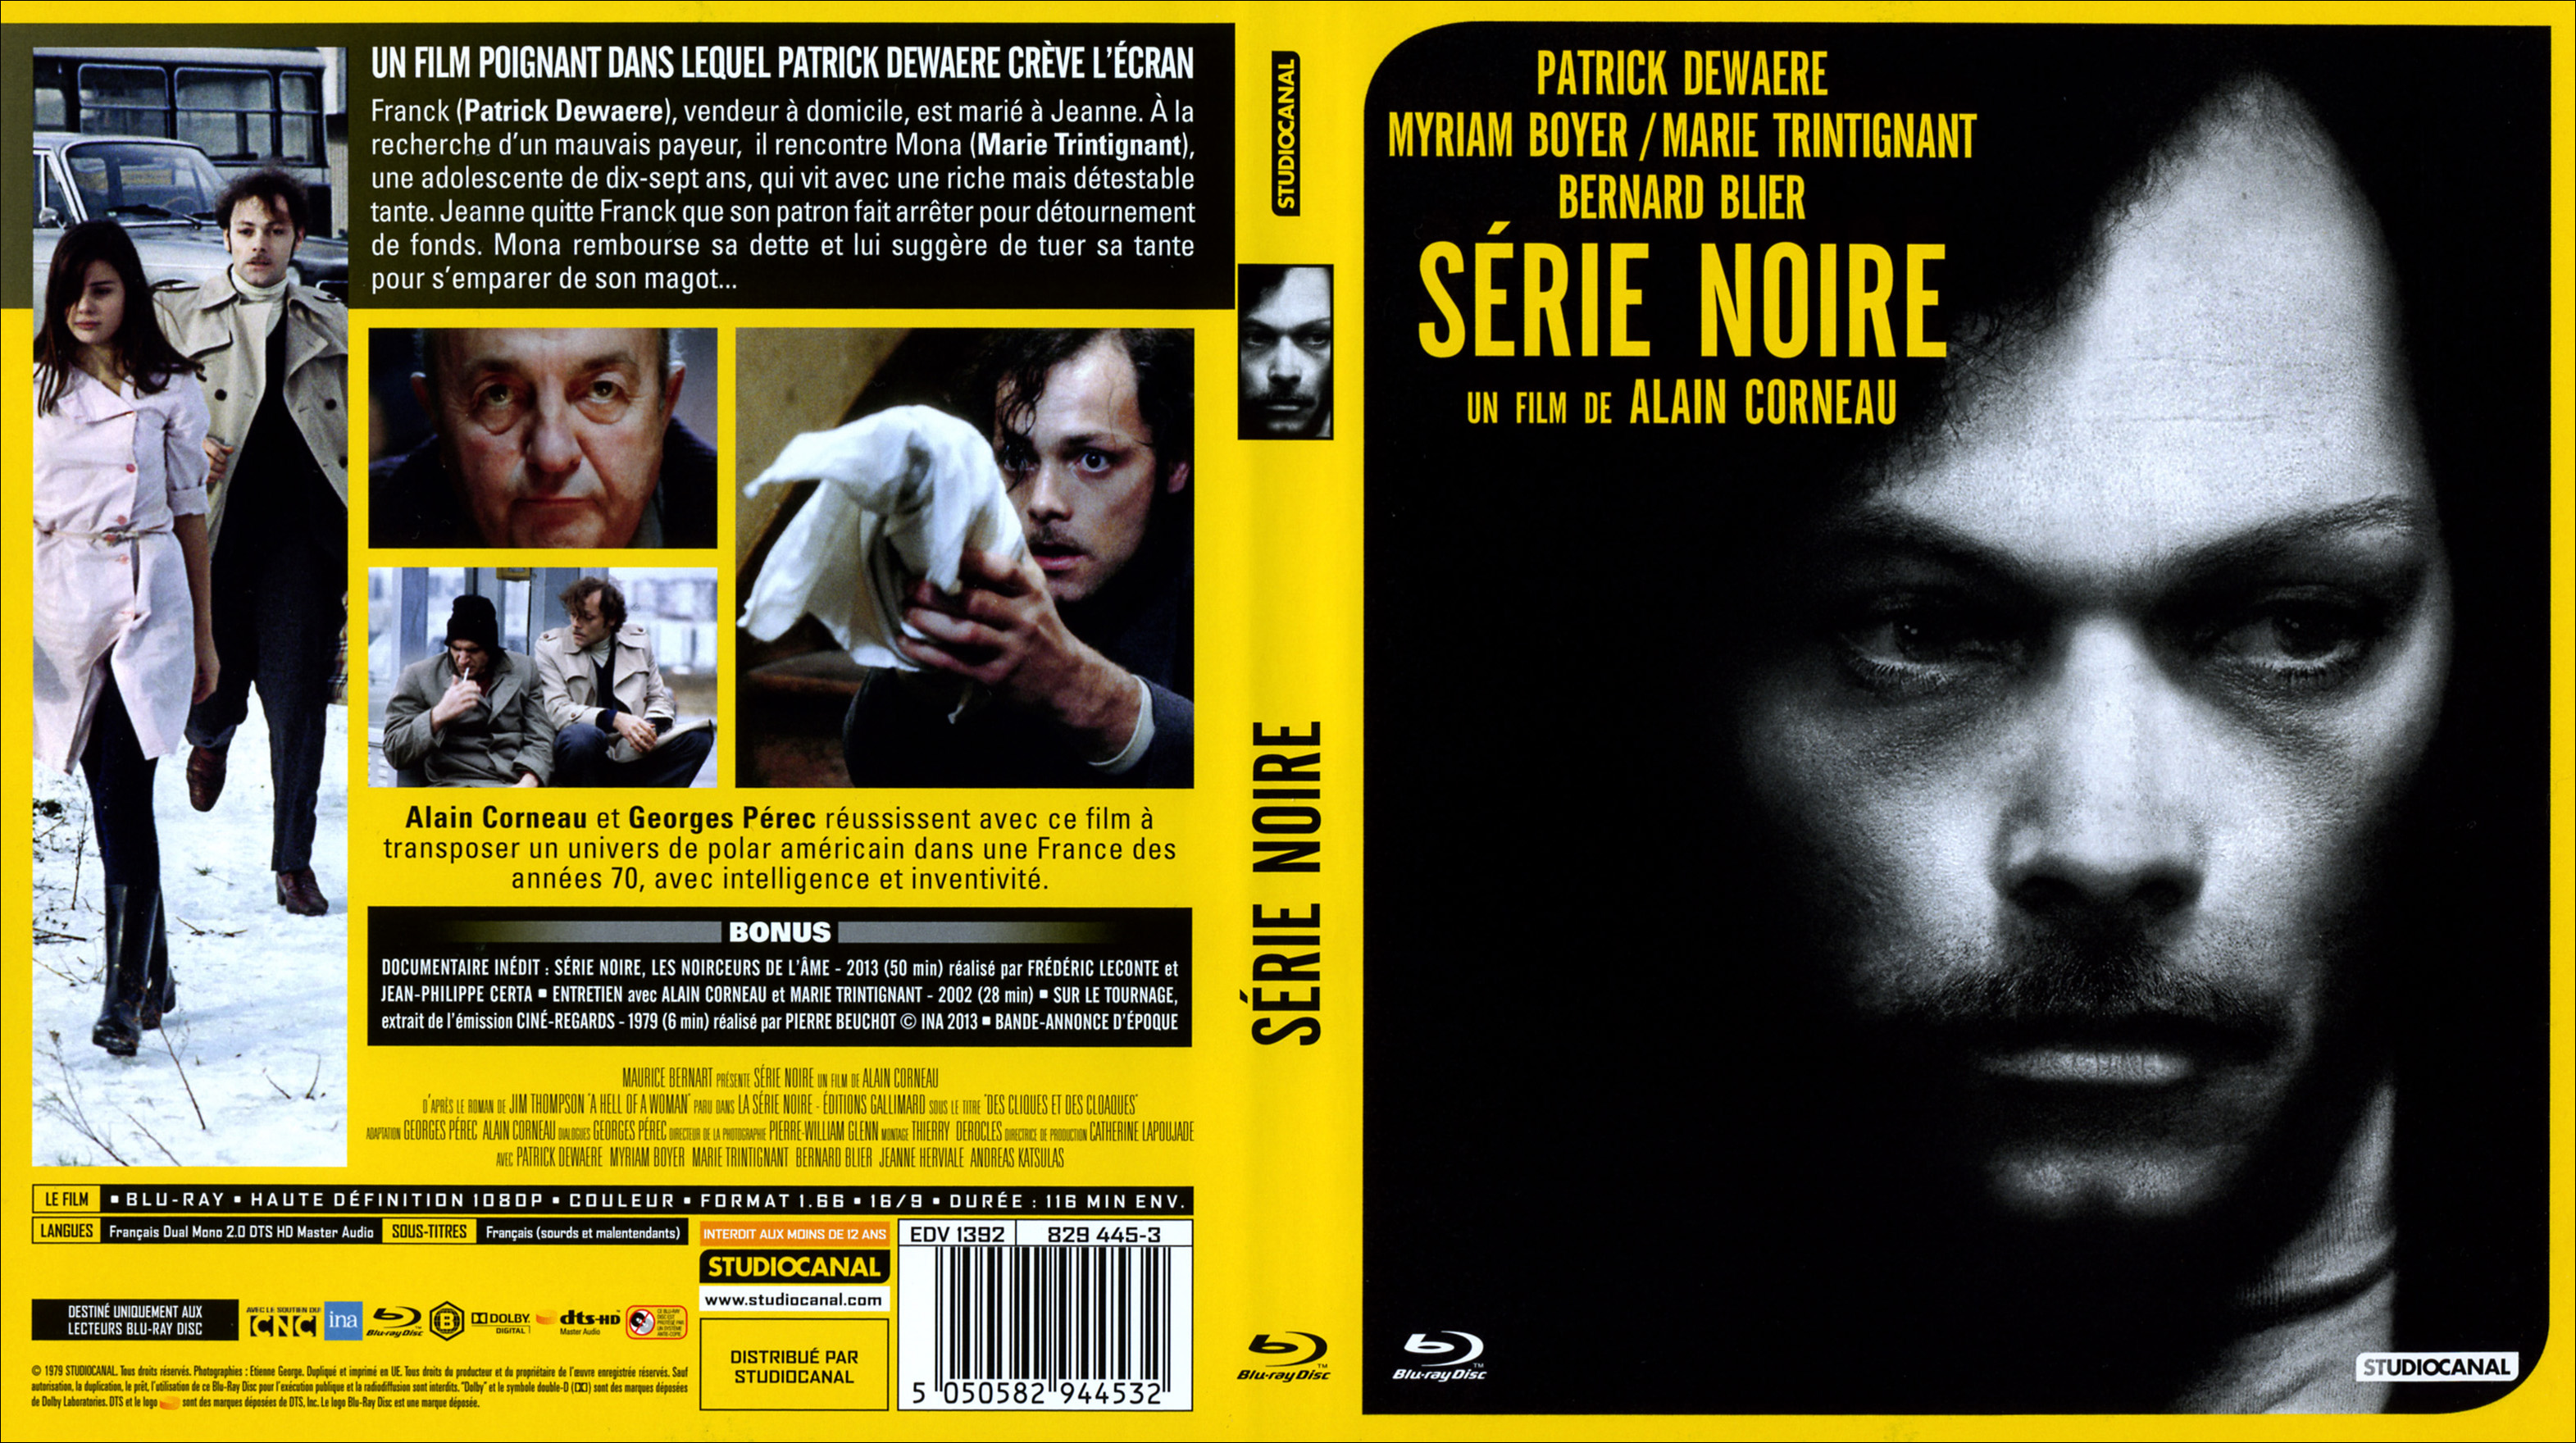 Jaquette DVD de Série noire (BLU-RAY) - Cinéma Passion